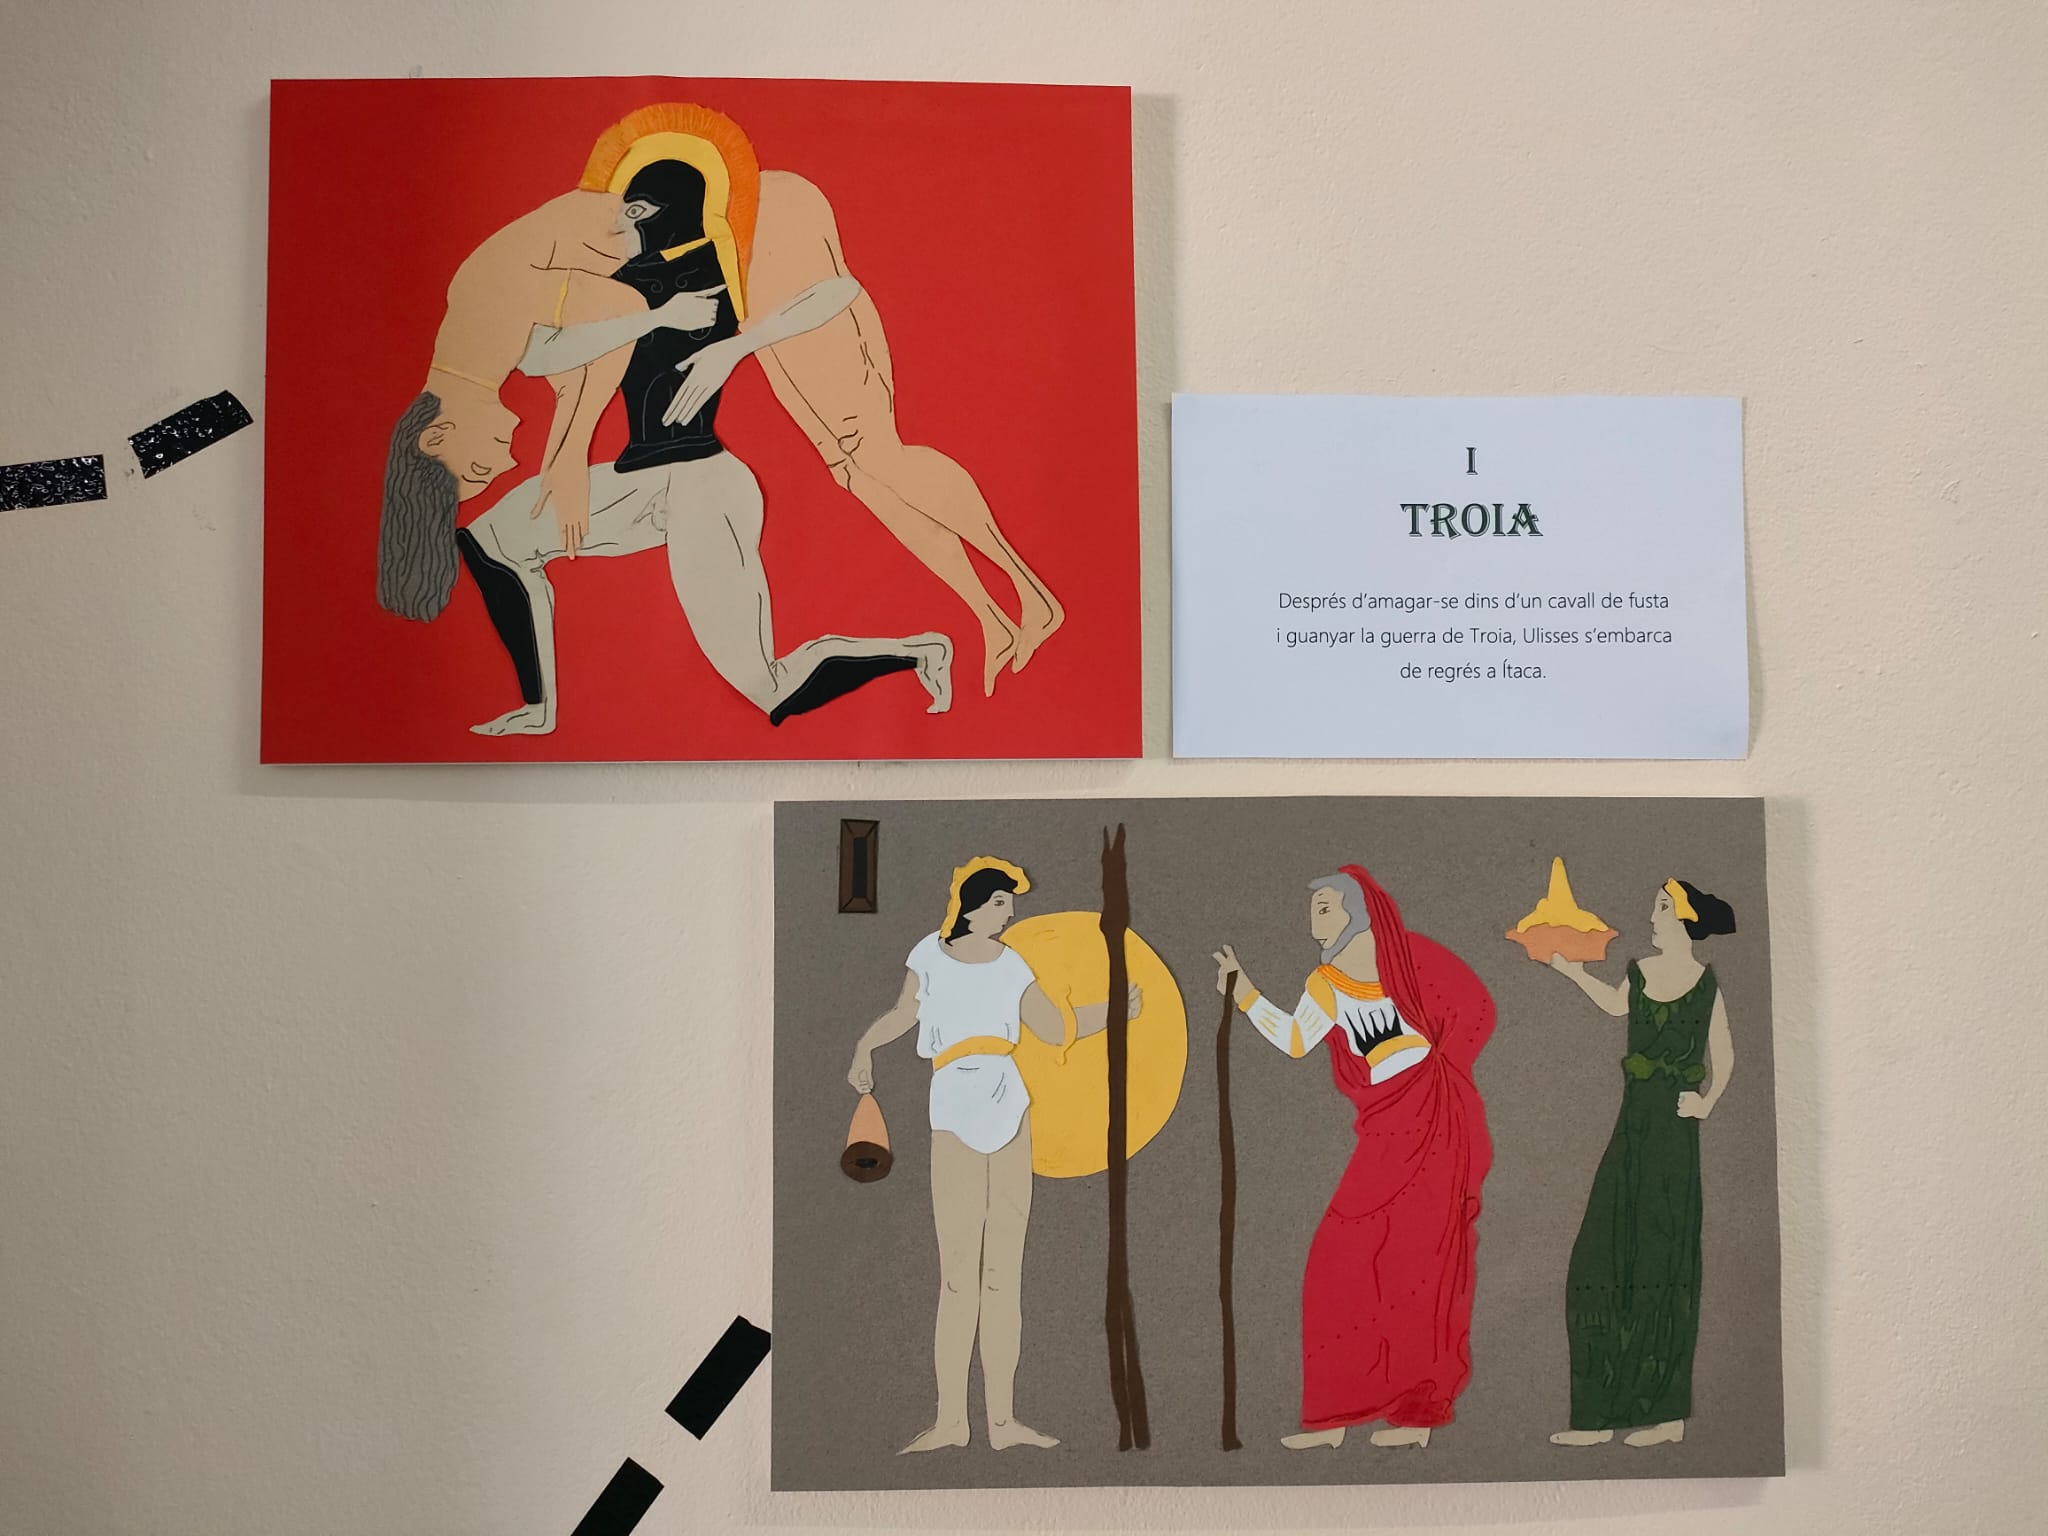 Exposición plástica resultado del proyecto interdisciplinar "La Odisea", realizado por los alumnos de 1º ESO del Centro Educativo Gençana